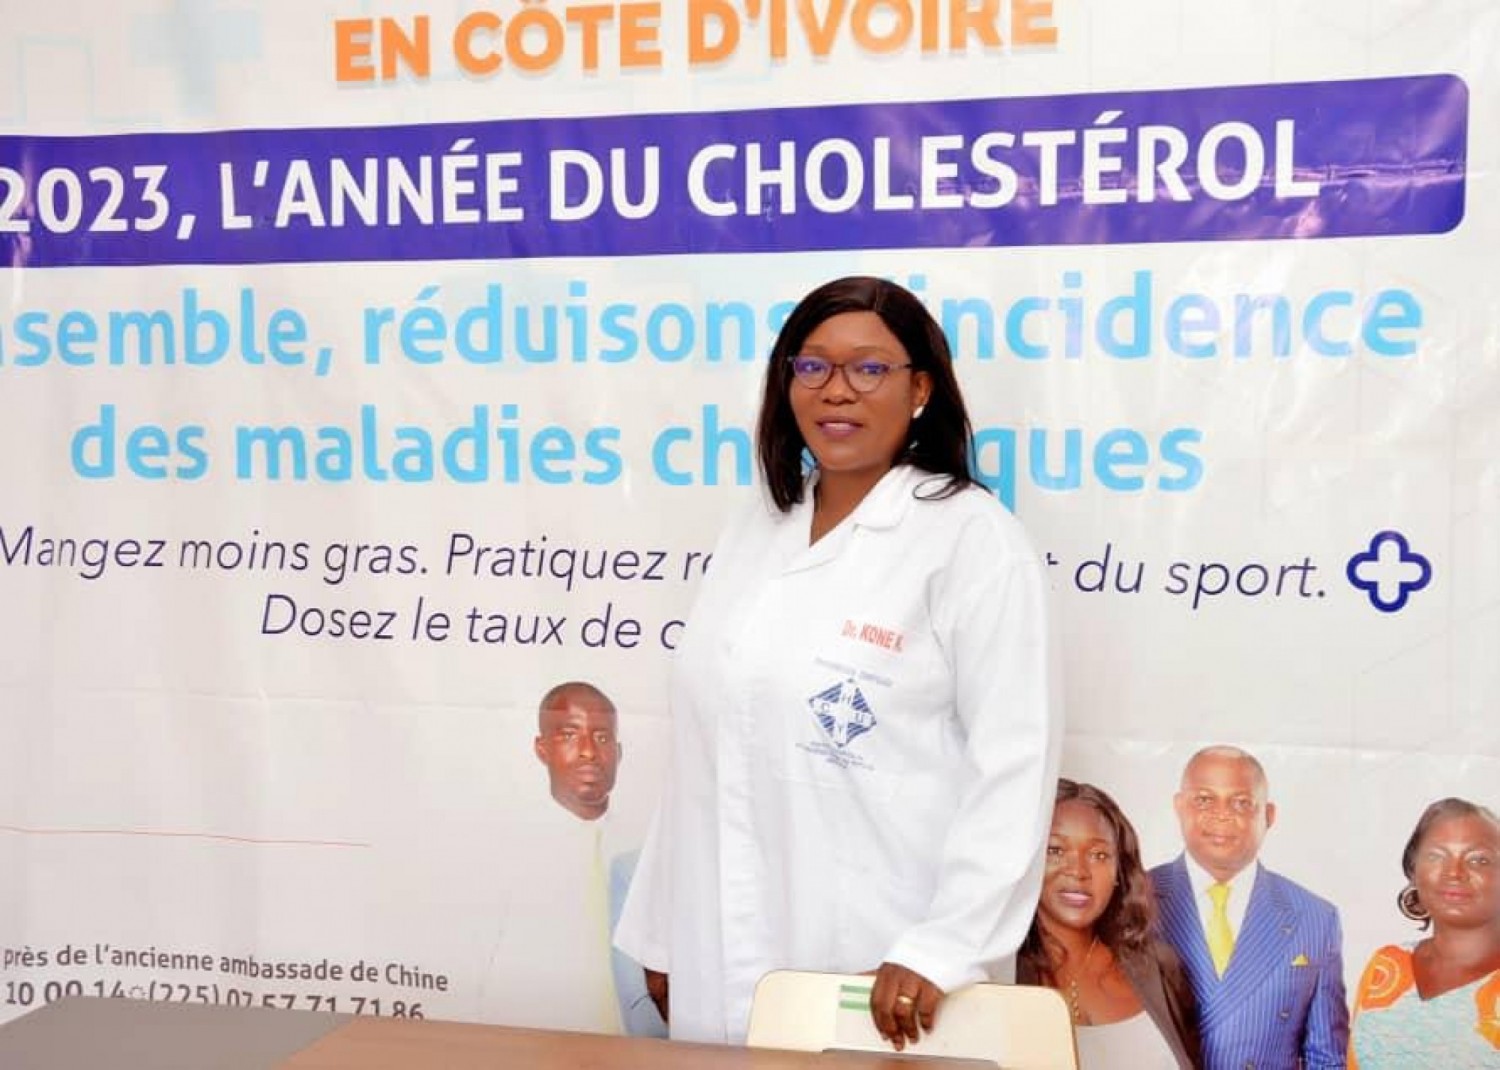 Côte d'Ivoire :     Dépistage des maladies chroniques lancé par la MUGEFCI, un médecin membre de la mutuelle émet des réserves sur l'opération